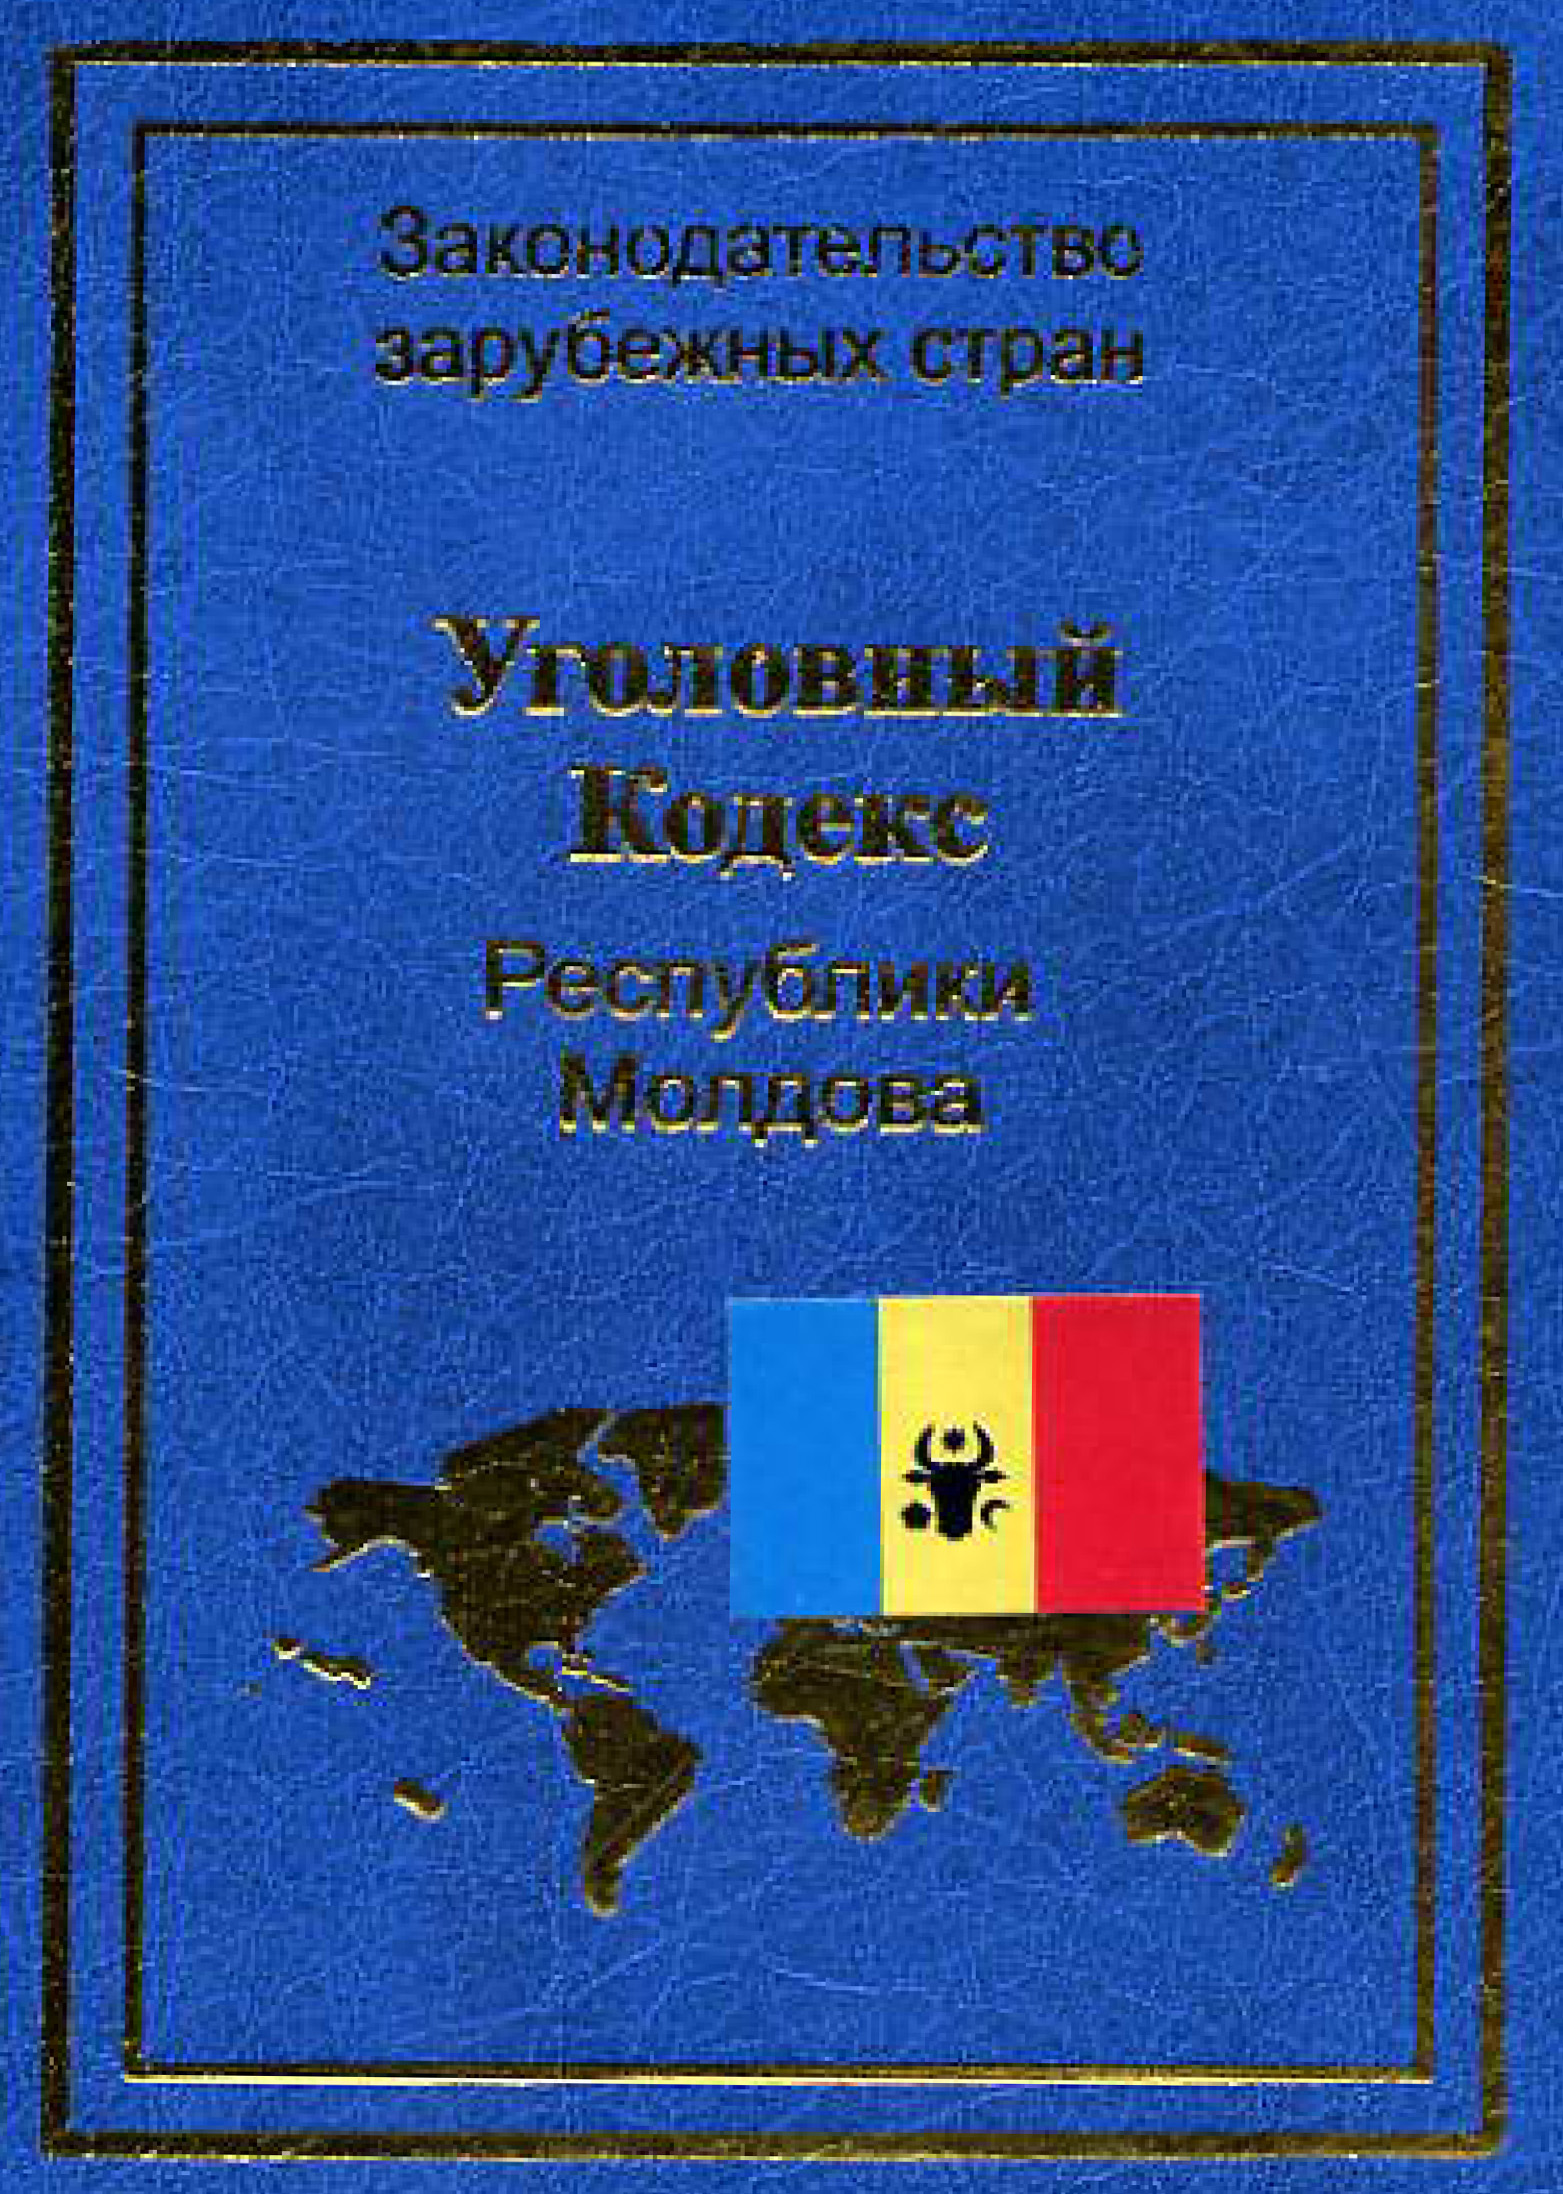 Книга Уголовный кодекс Республики Молдова из серии Законодательство зарубежных стран, созданная  Нормативные правовые акты, может относится к жанру Юриспруденция, право, Юриспруденция, право. Стоимость книги Уголовный кодекс Республики Молдова  с идентификатором 11132586 составляет 69.90 руб.